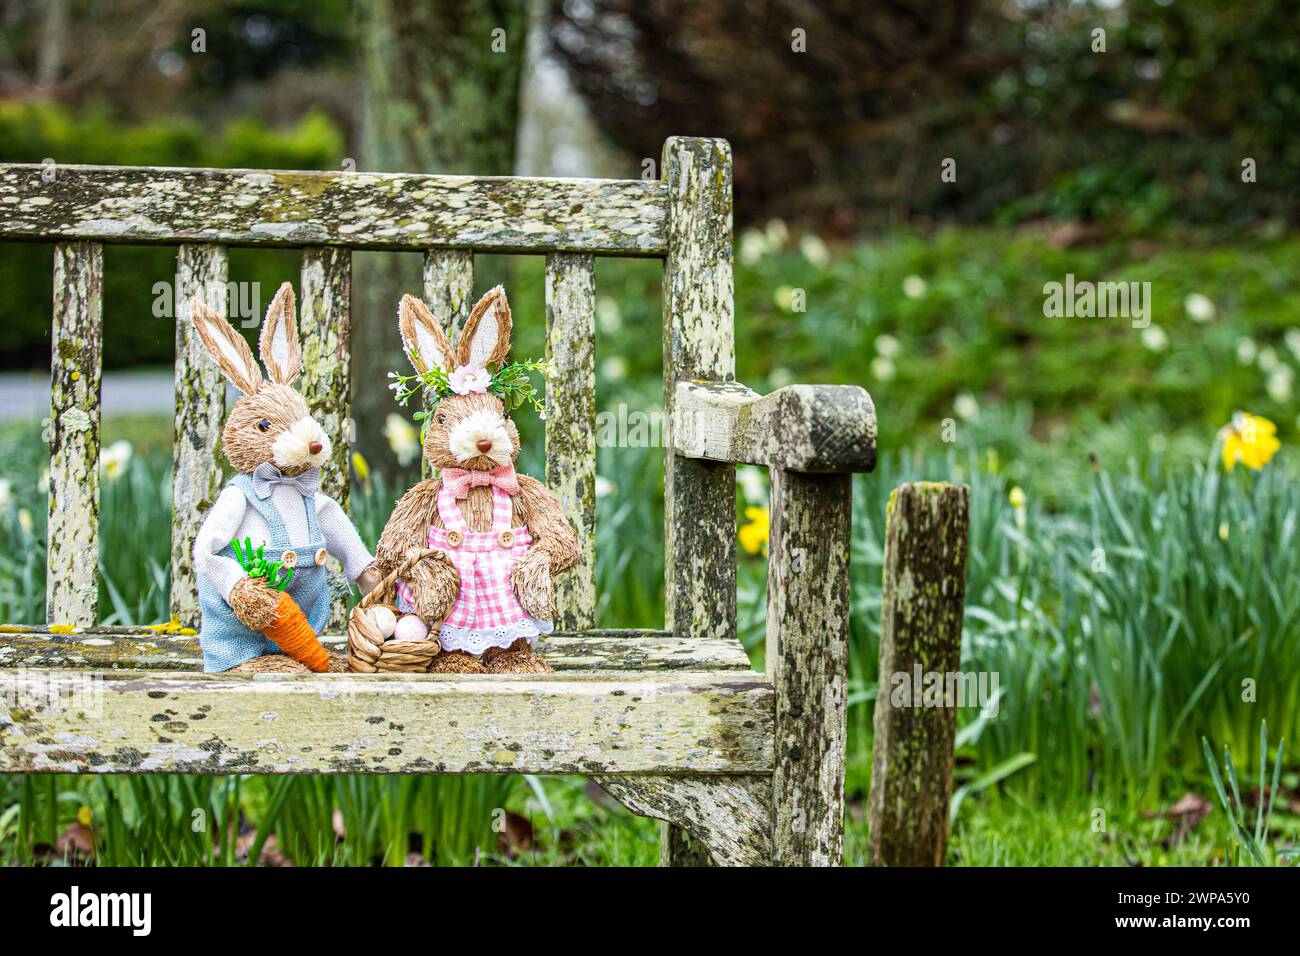 Simpatici conigli giocattolo in ambientazioni boschive tra nevi e narcisi. Ideale per la pasqua o per libri o foto per bambini. Foto Stock